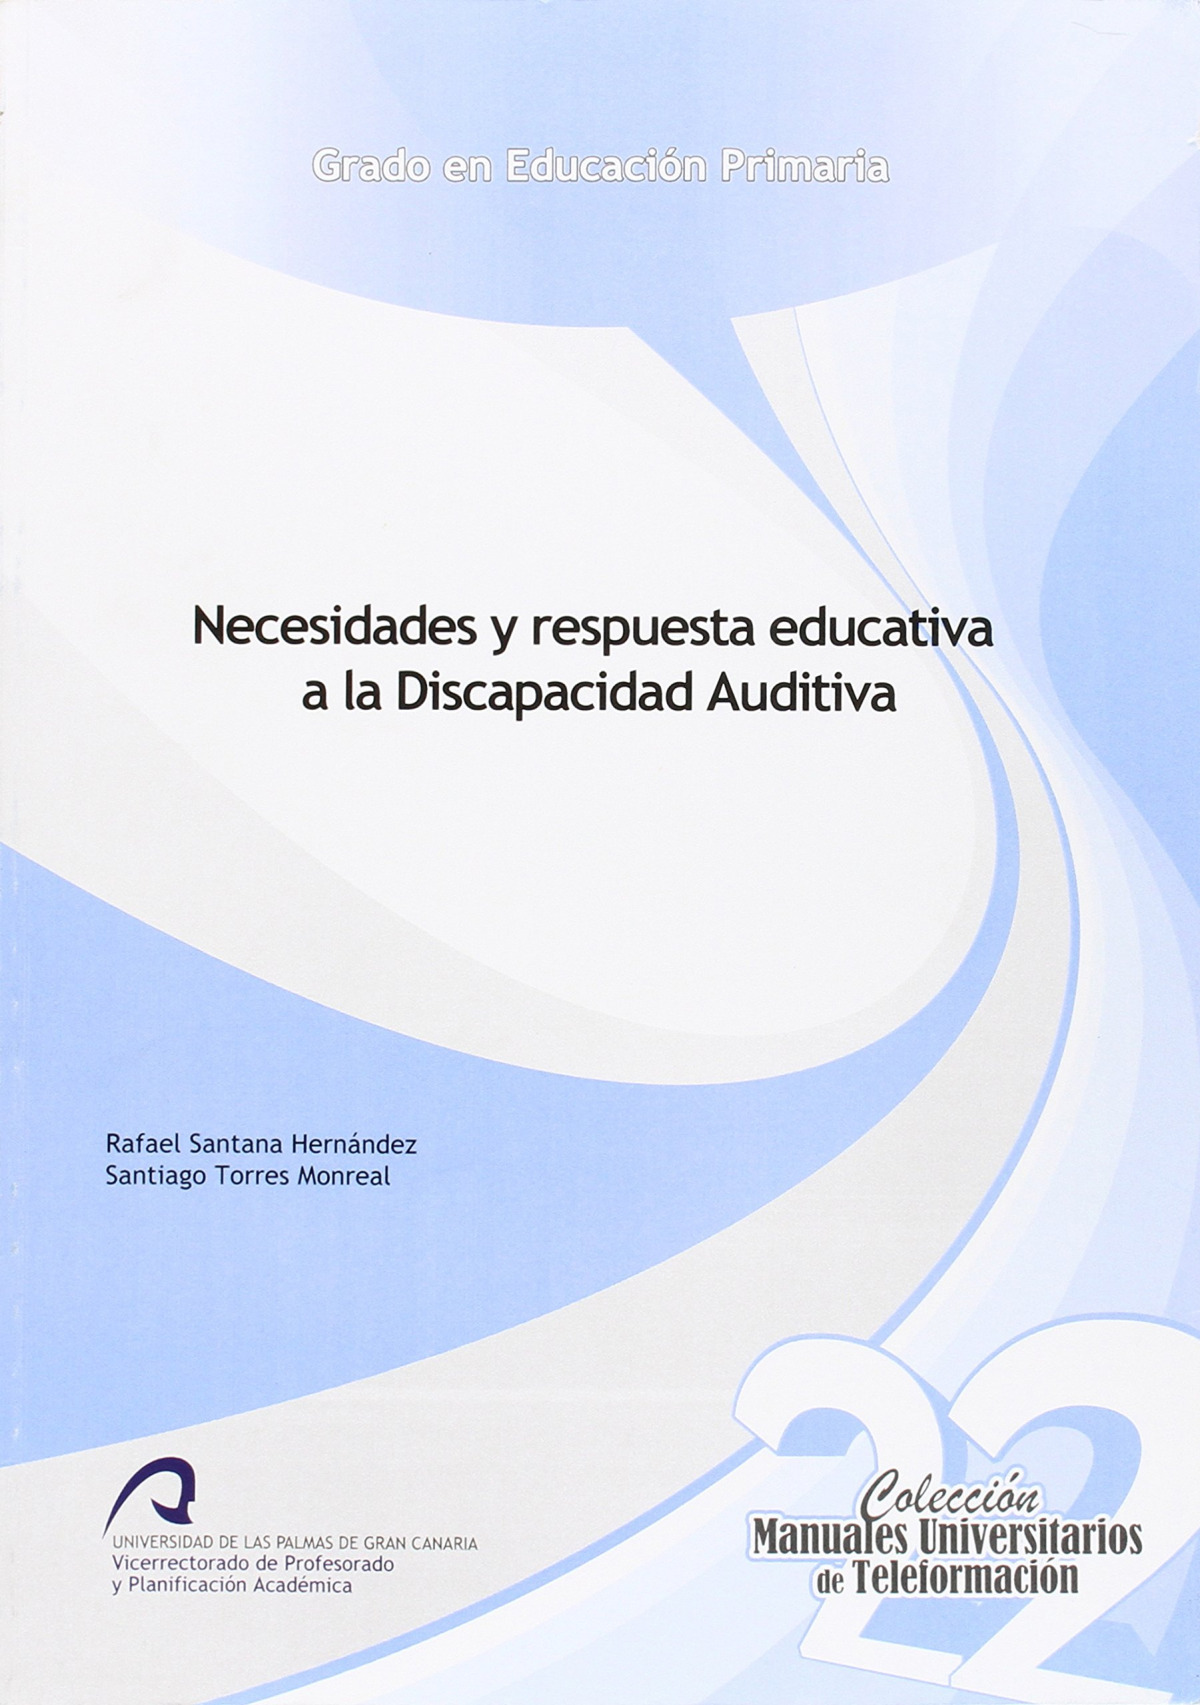 Necesidades y respuesta educativa a la discapacidad auditiva - Santana Hernández, Rafael, Torres Monrea